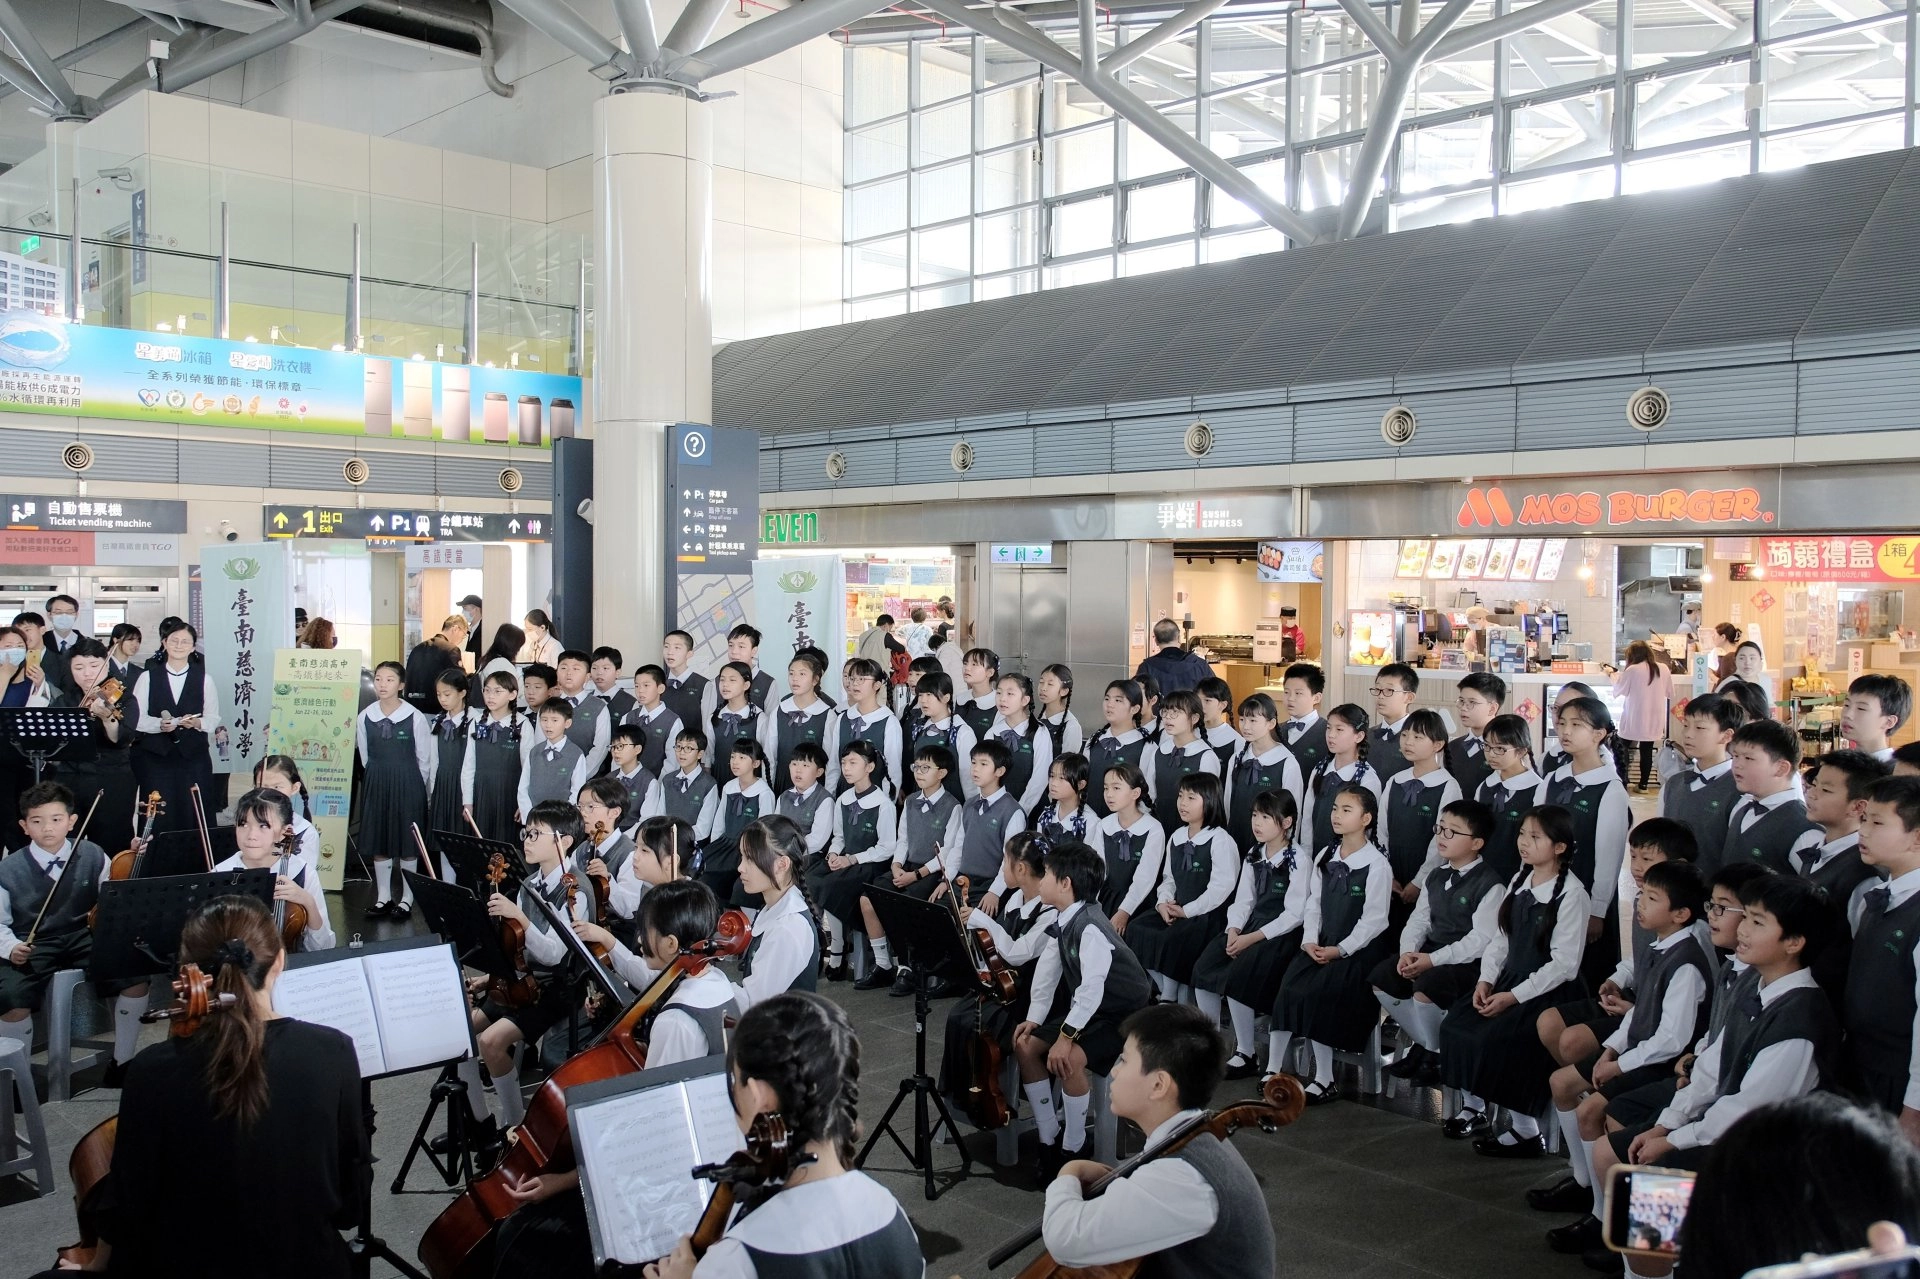 弦樂團與合唱團在高鐵站快閃演出，為旅客帶來愉悅的音樂饗宴。